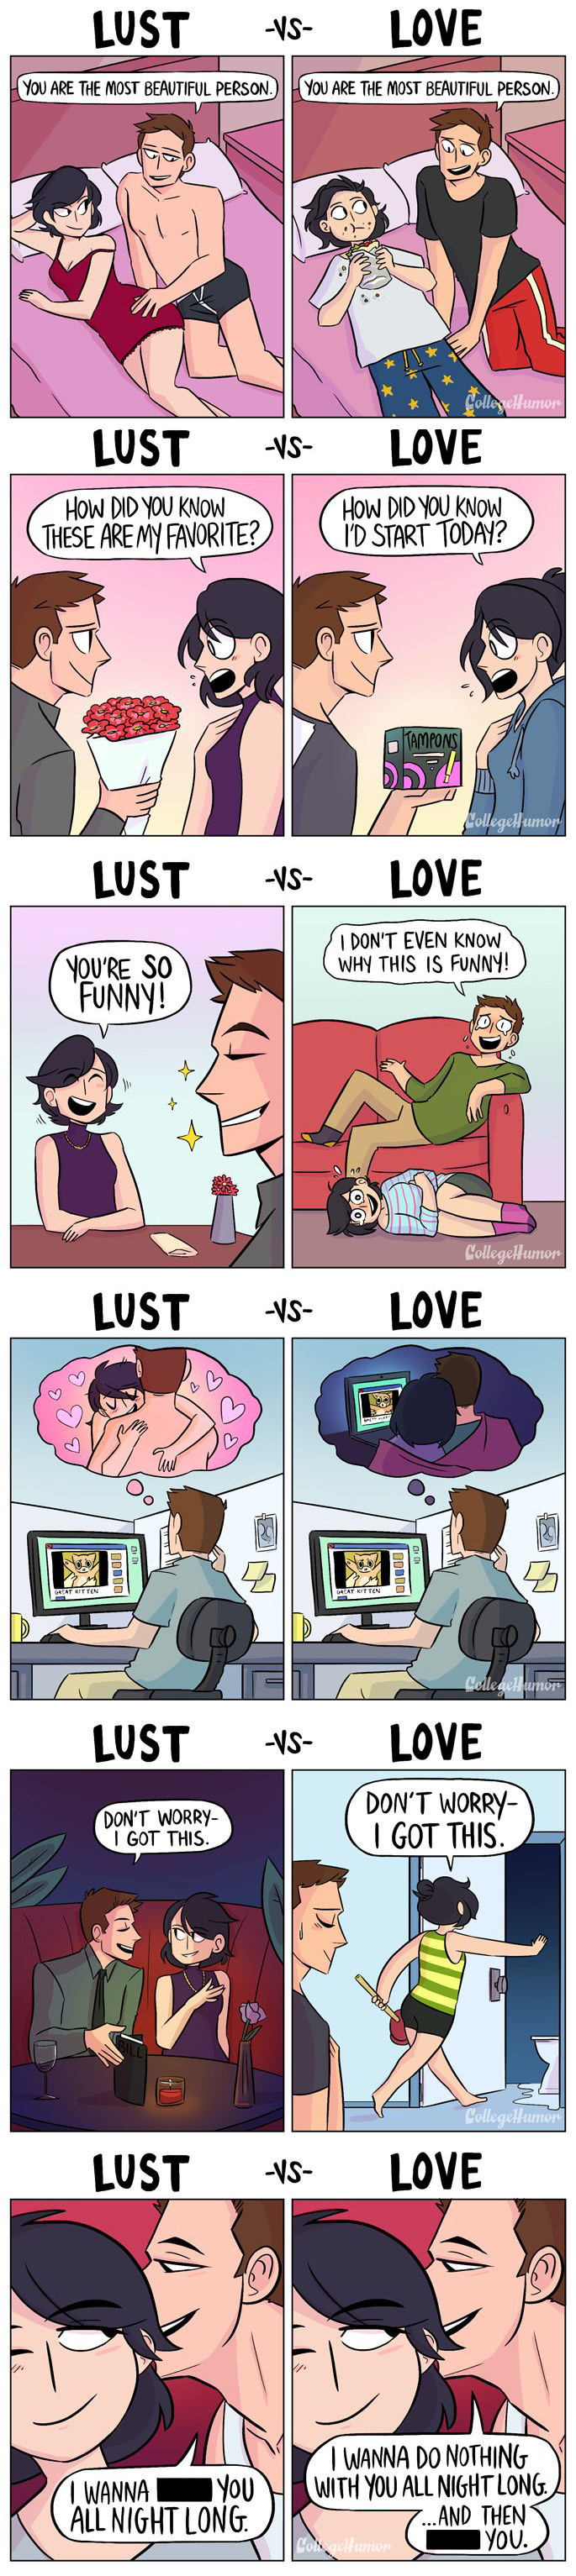 lust-vs-love